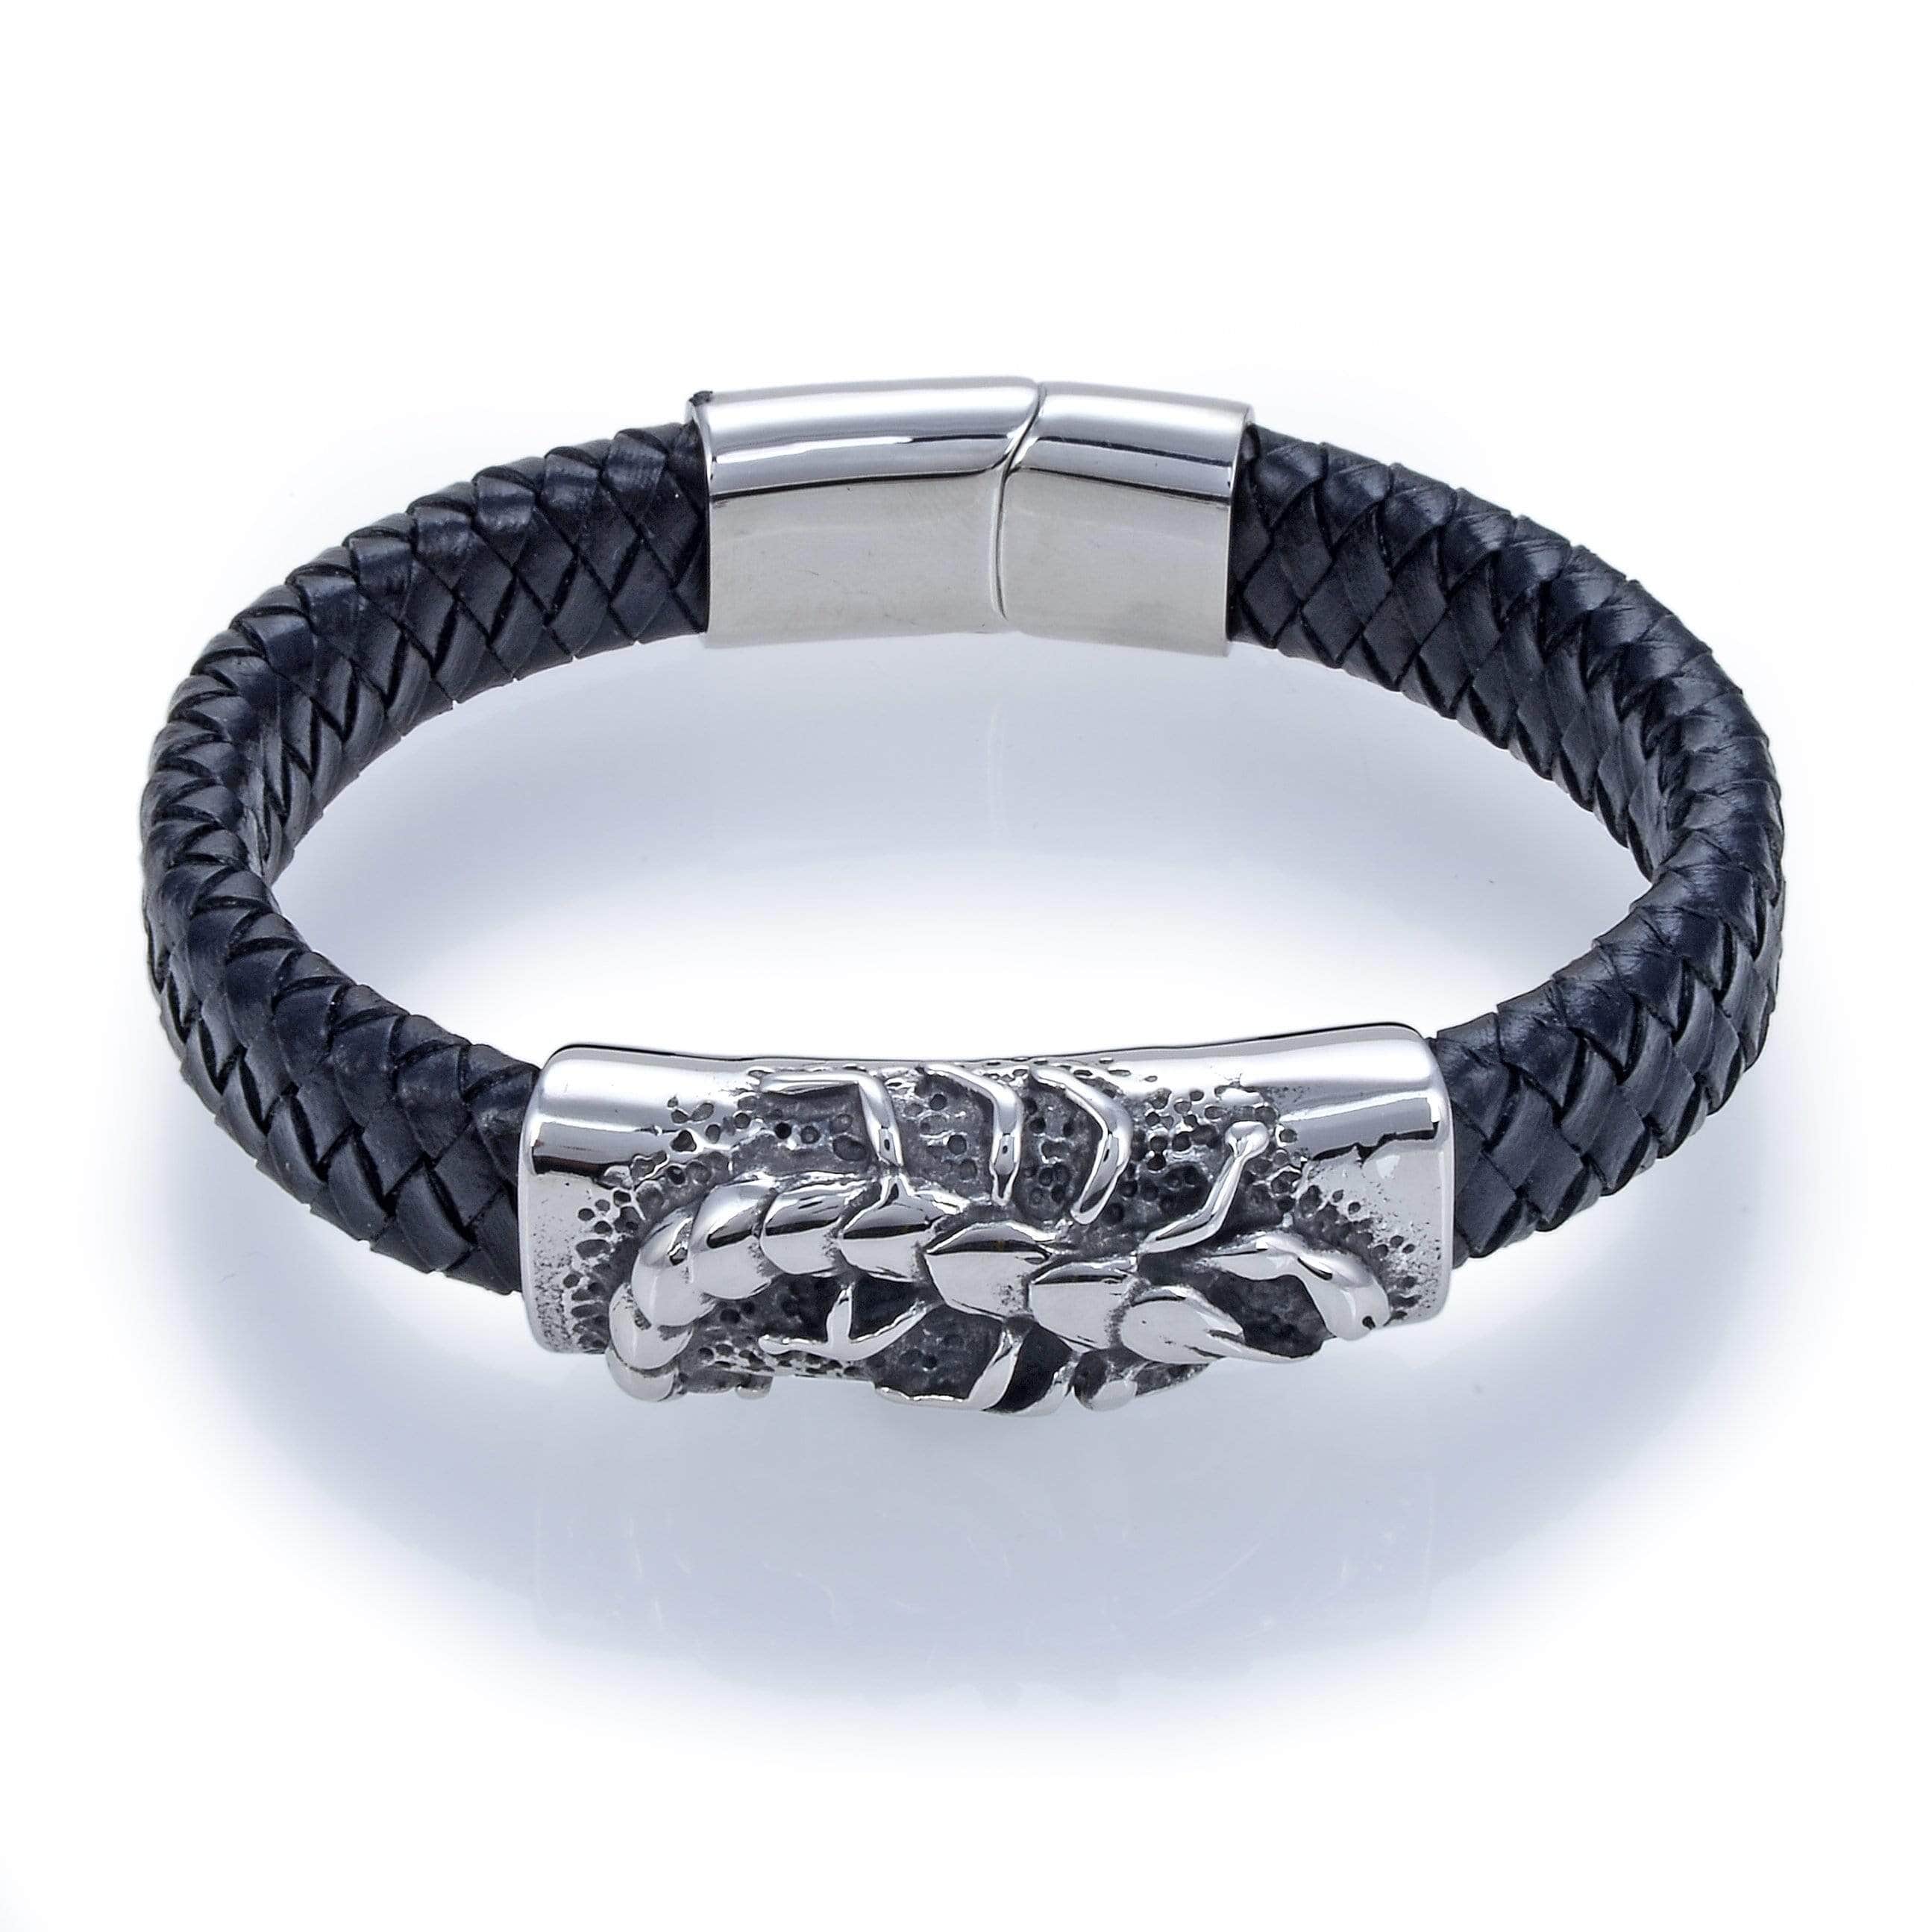 Kalifano Steel Hearts Jewelry Steel Hearts Scorpion Black Leather Bracelet SHB200-62